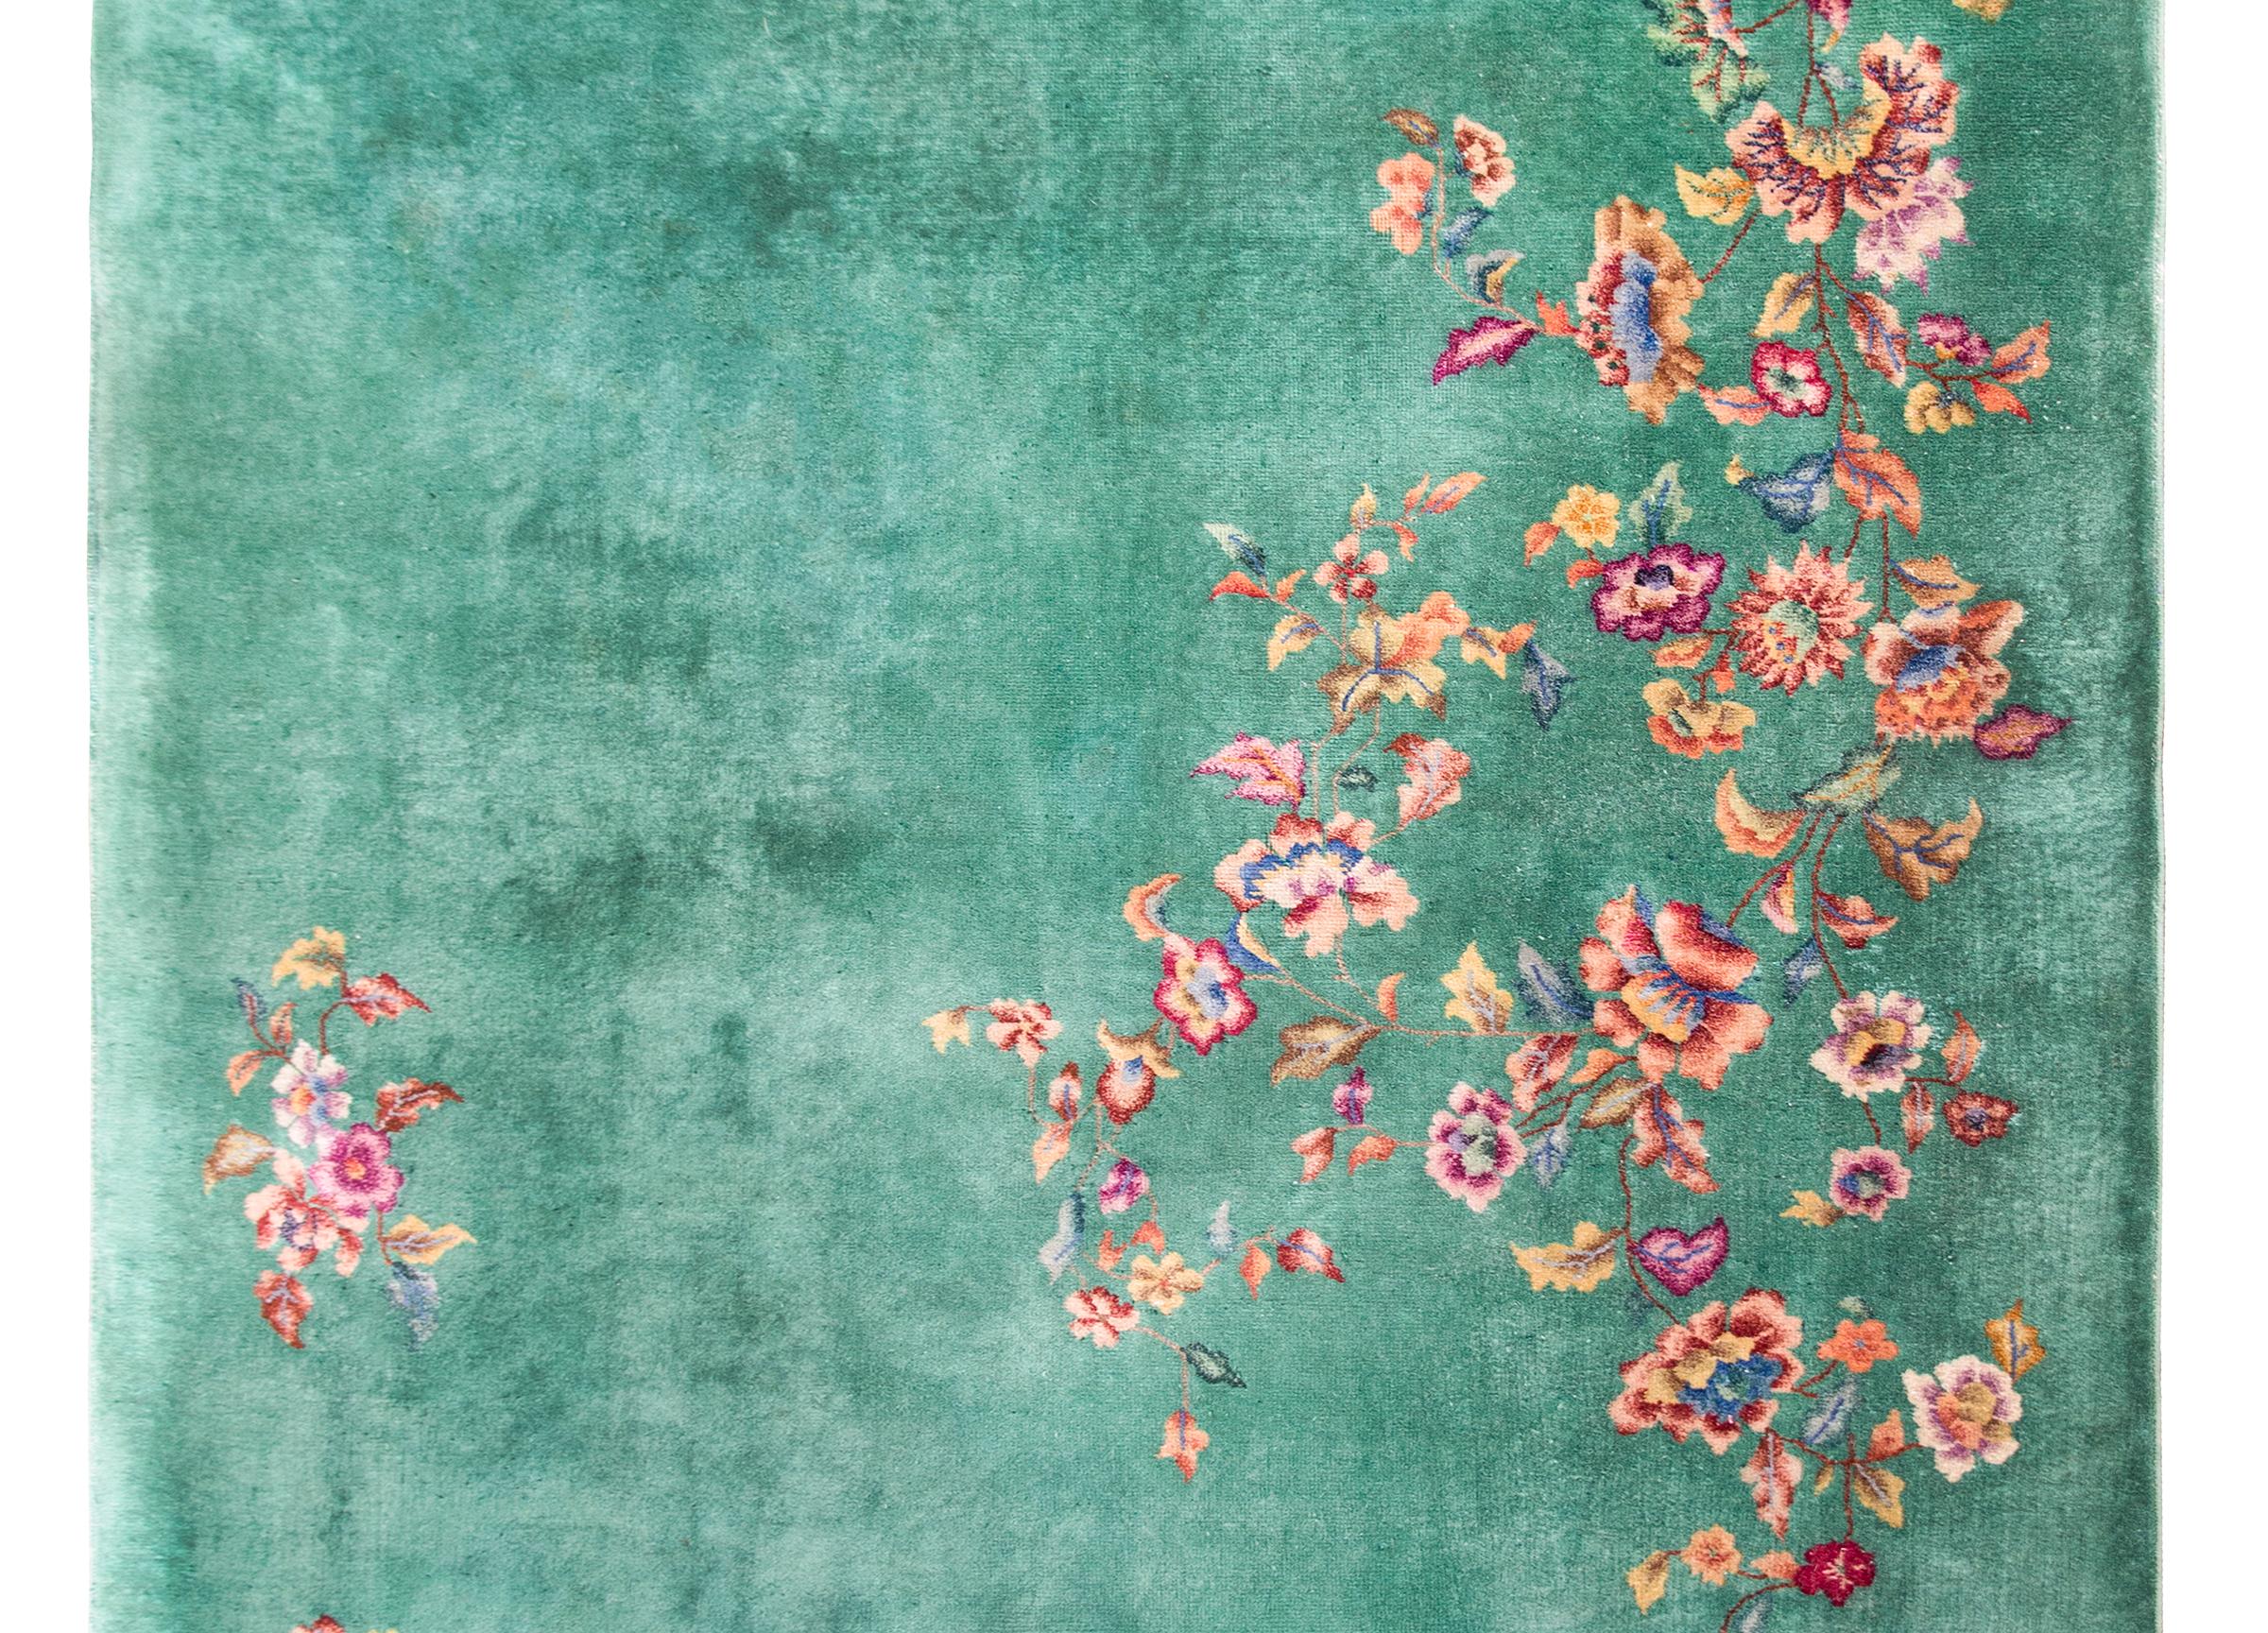 Ein schöner chinesischer Art-Déco-Teppich aus dem frühen 20. Jahrhundert mit einem zeladongrünen Feld, das mit mehrfarbigen Pfingstrosen, Chrysanthemen, Lotus- und Kirschblüten überzogen ist, allesamt glücksverheißende Symbole für die vier